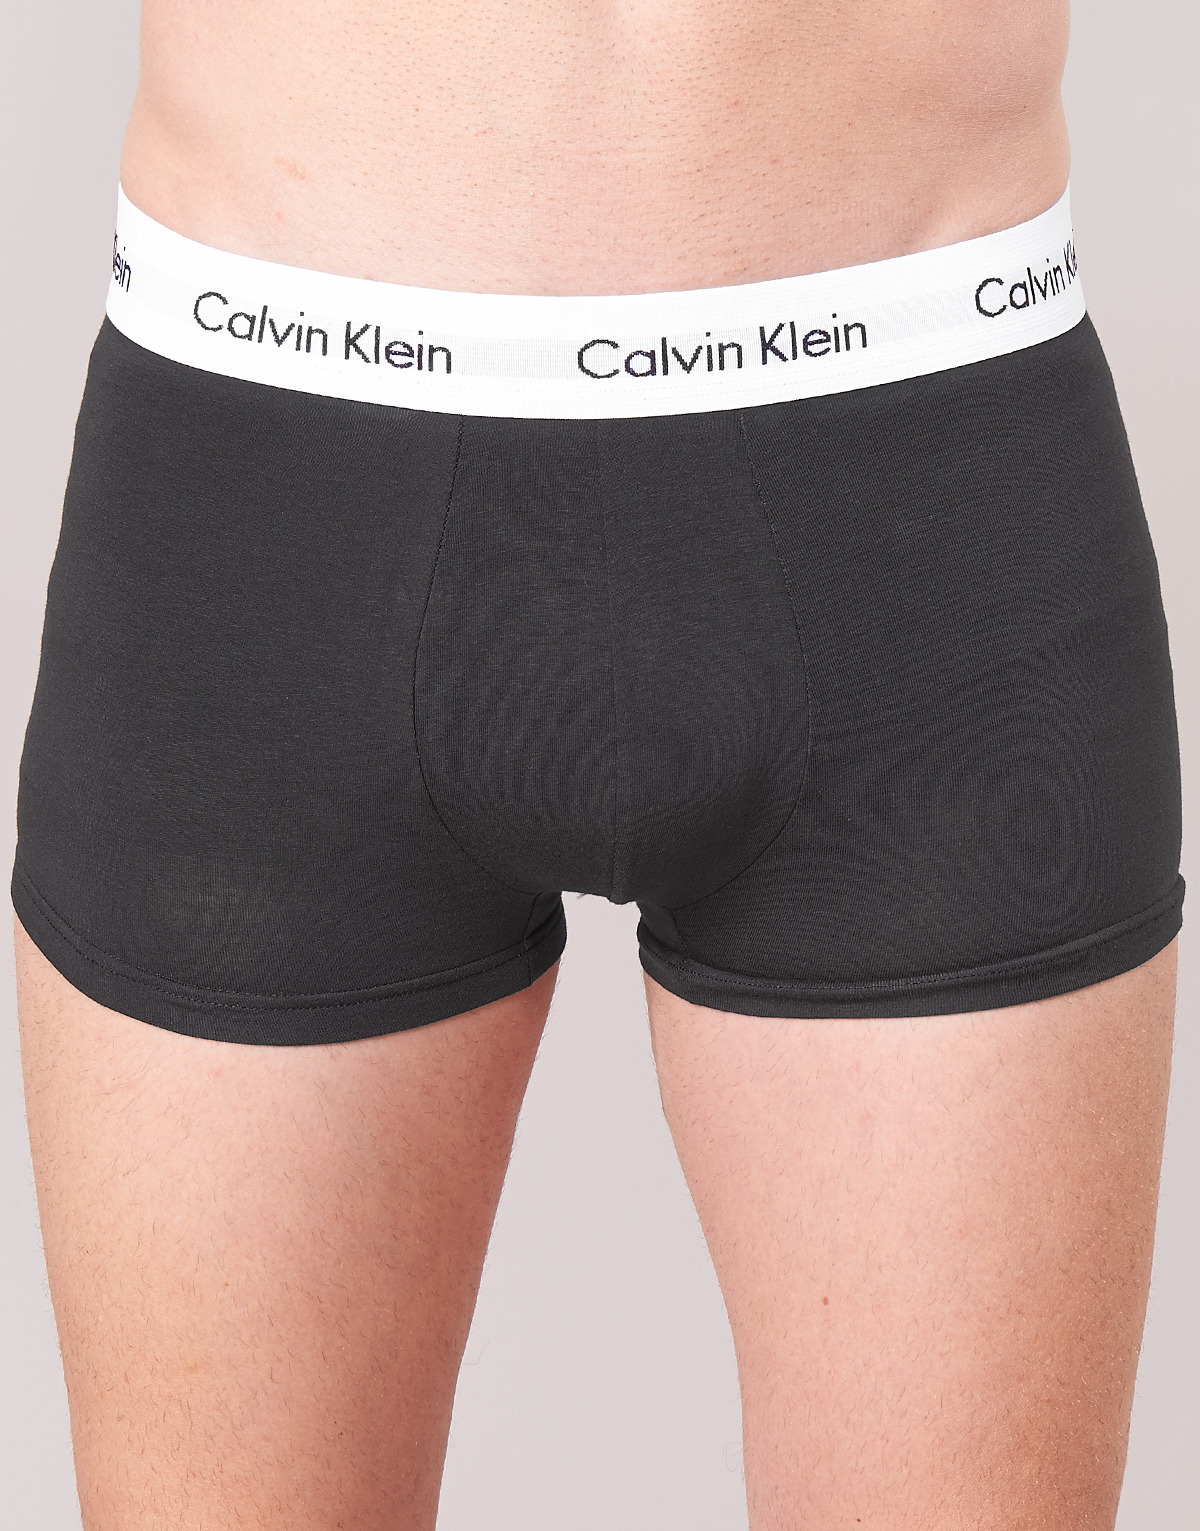 Calvin Klein Jeans Noir / Blanc / Gris chiné COTTON STRECH LOW RISE TRUNK X 3 1KOjQrOH